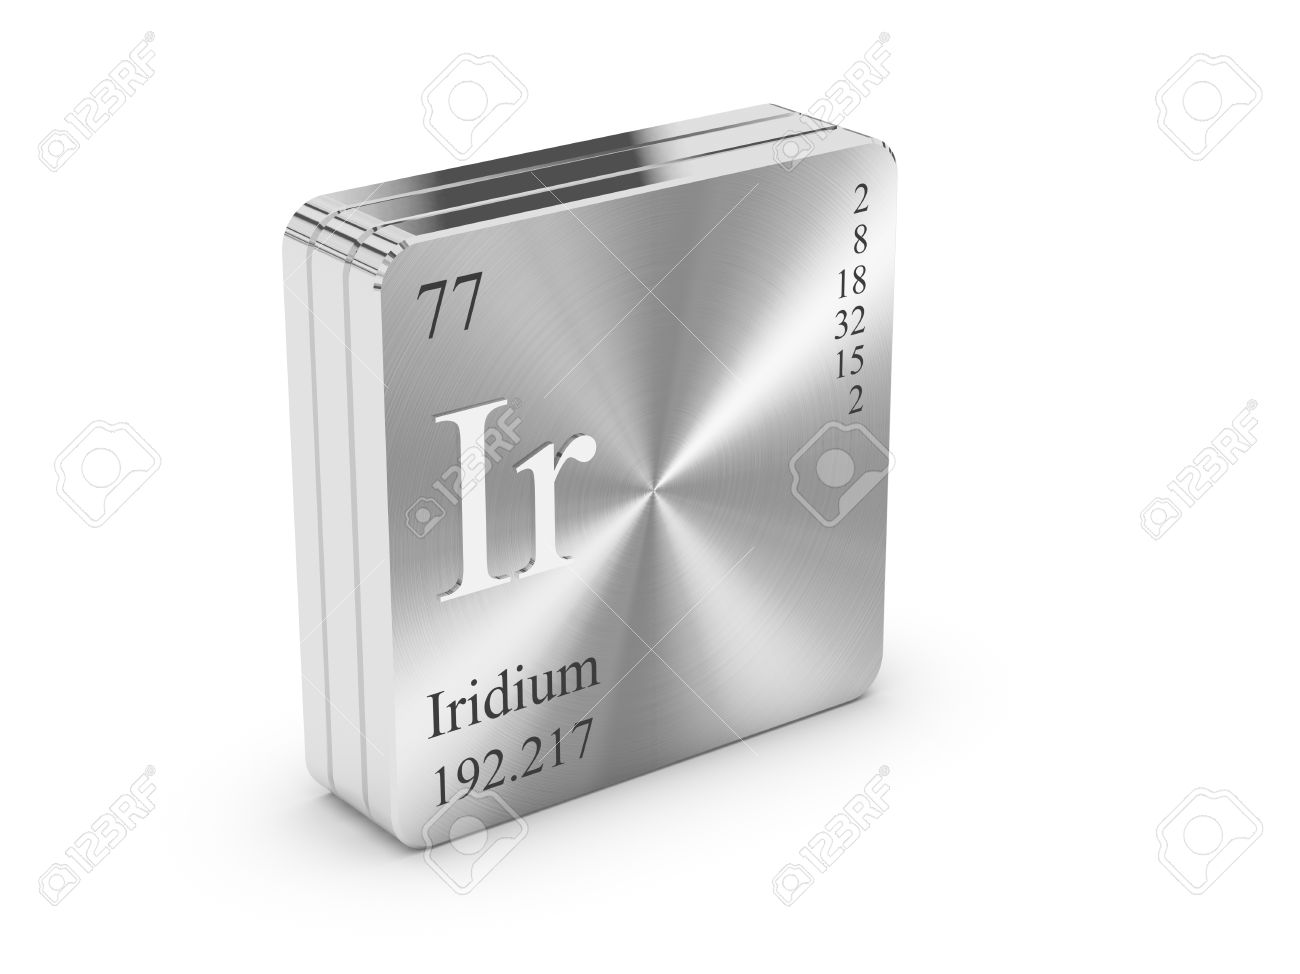 Iridium - Leistungsbilanz in Gramm